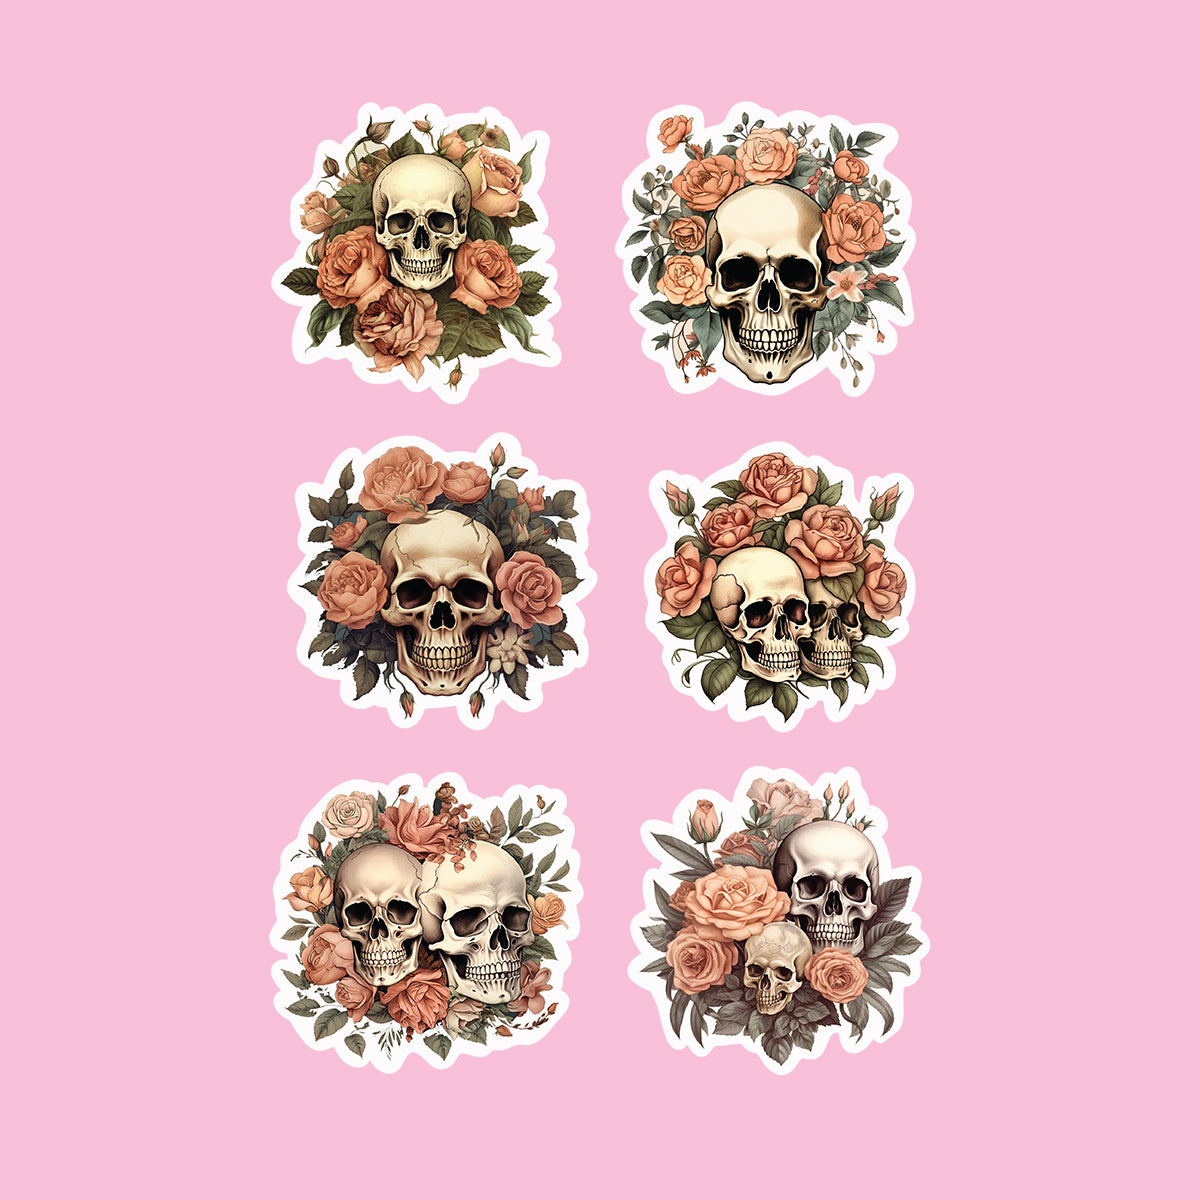 Orange roses & skulls sticker pack